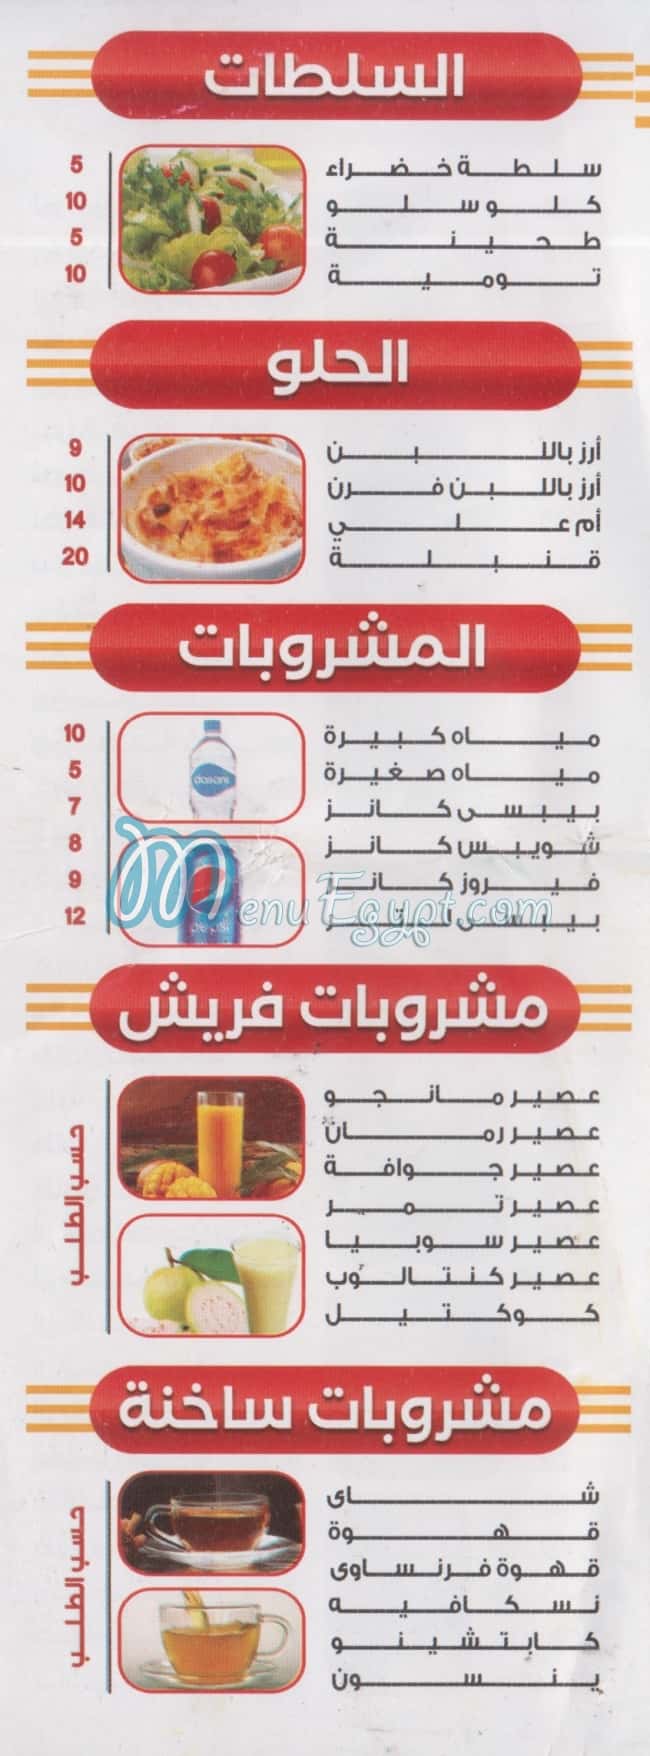 مطعم الحلو مصر الخط الساخن